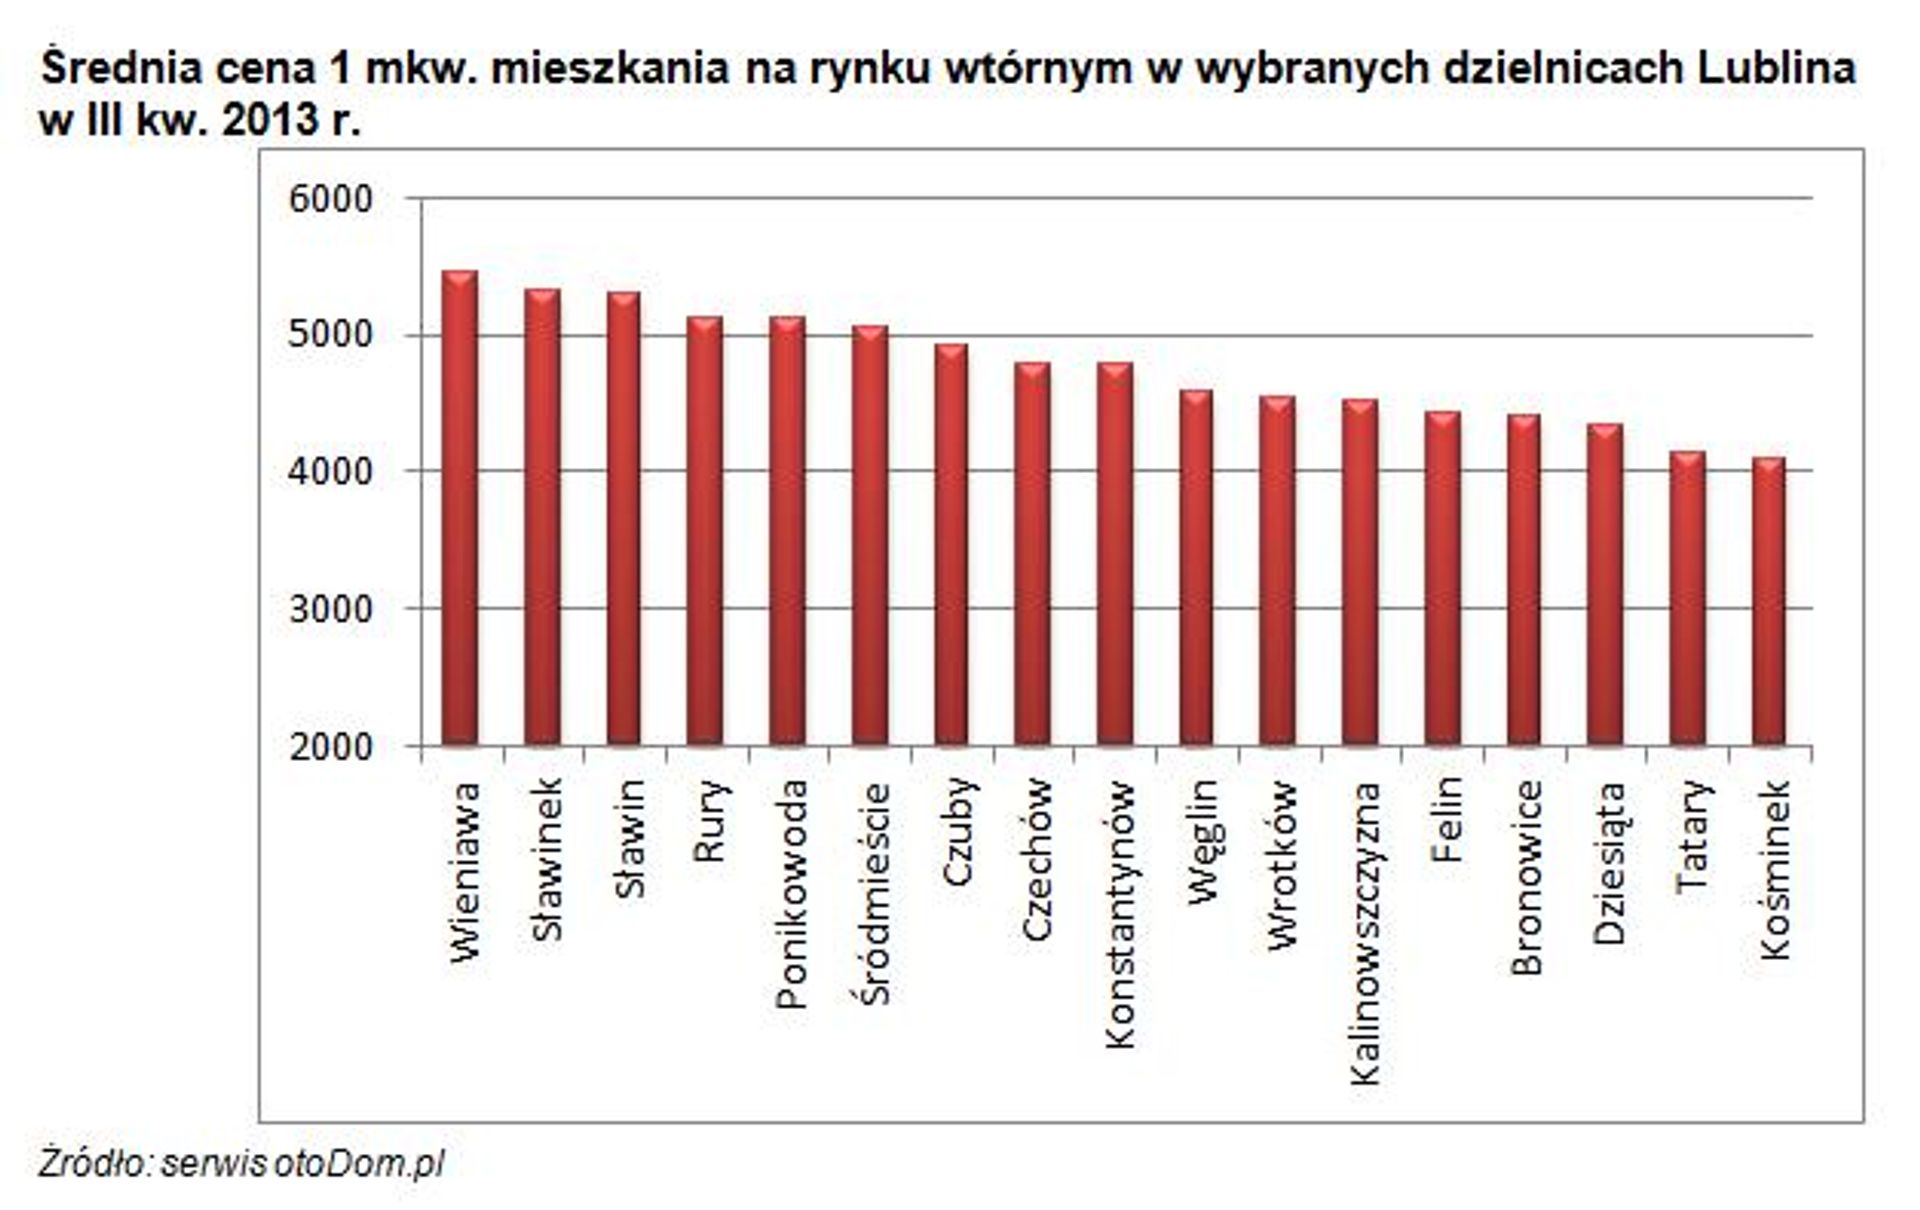  Analiza wtórnego rynku nieruchomości mieszkaniowych we wschodnim regionie Polski